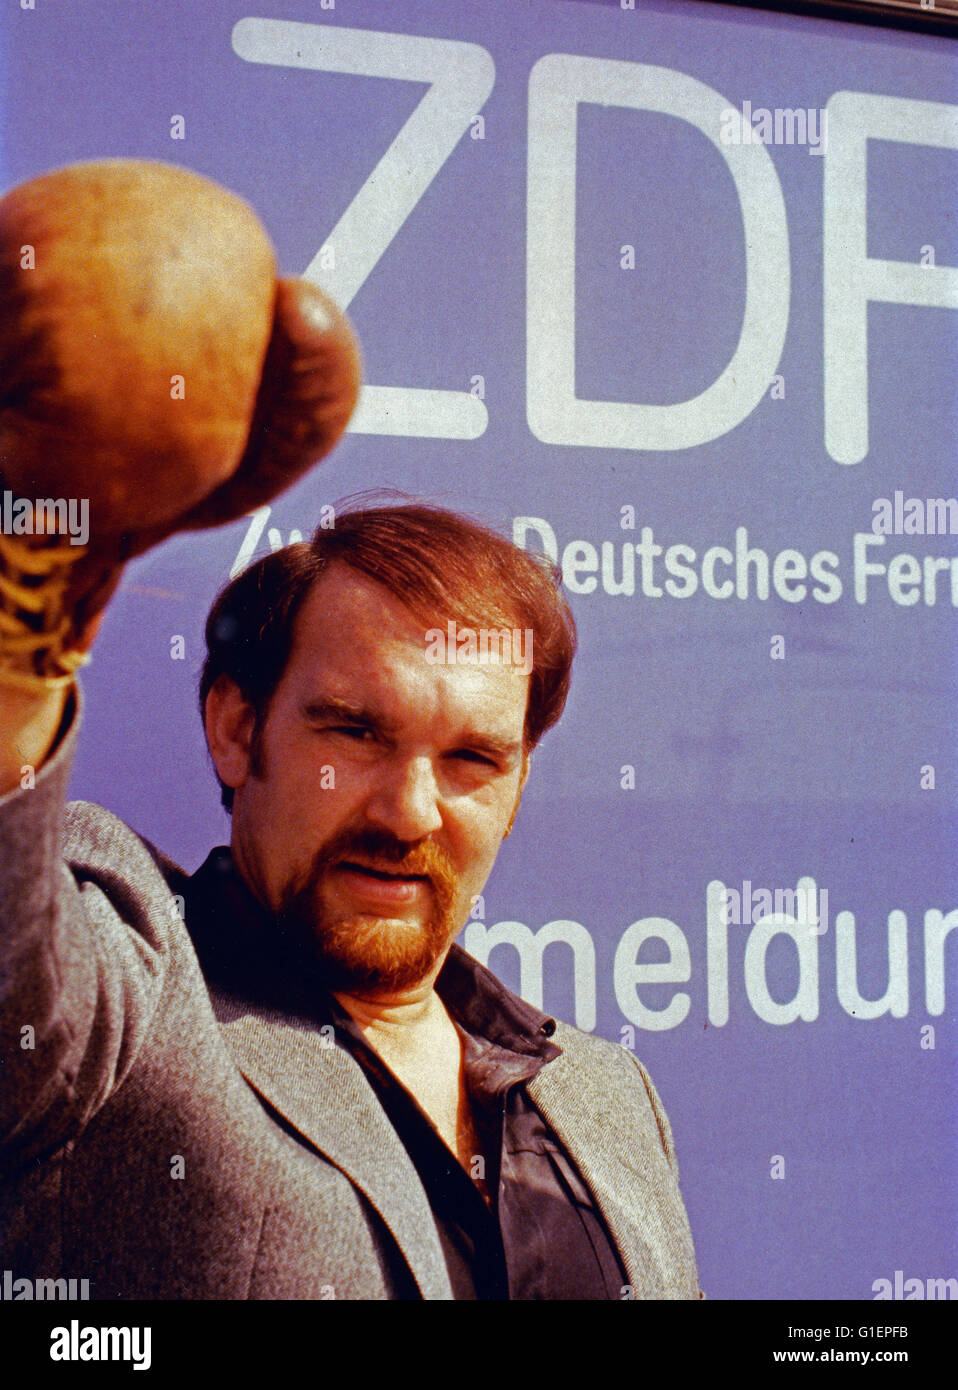 Malermeister Dieter Baumann protestiert vor dem ZDF Am Lerchenberg in Mainz gegen die Einblendung der drei Senderbuchstaben auf dem Bildschirm, Deutschland 1980er Jahre. Pittore Dieter Baumann protestando contro che mostra le tre lettera Z-D-F sullo schermo della TV, Germania degli anni ottanta. Foto Stock